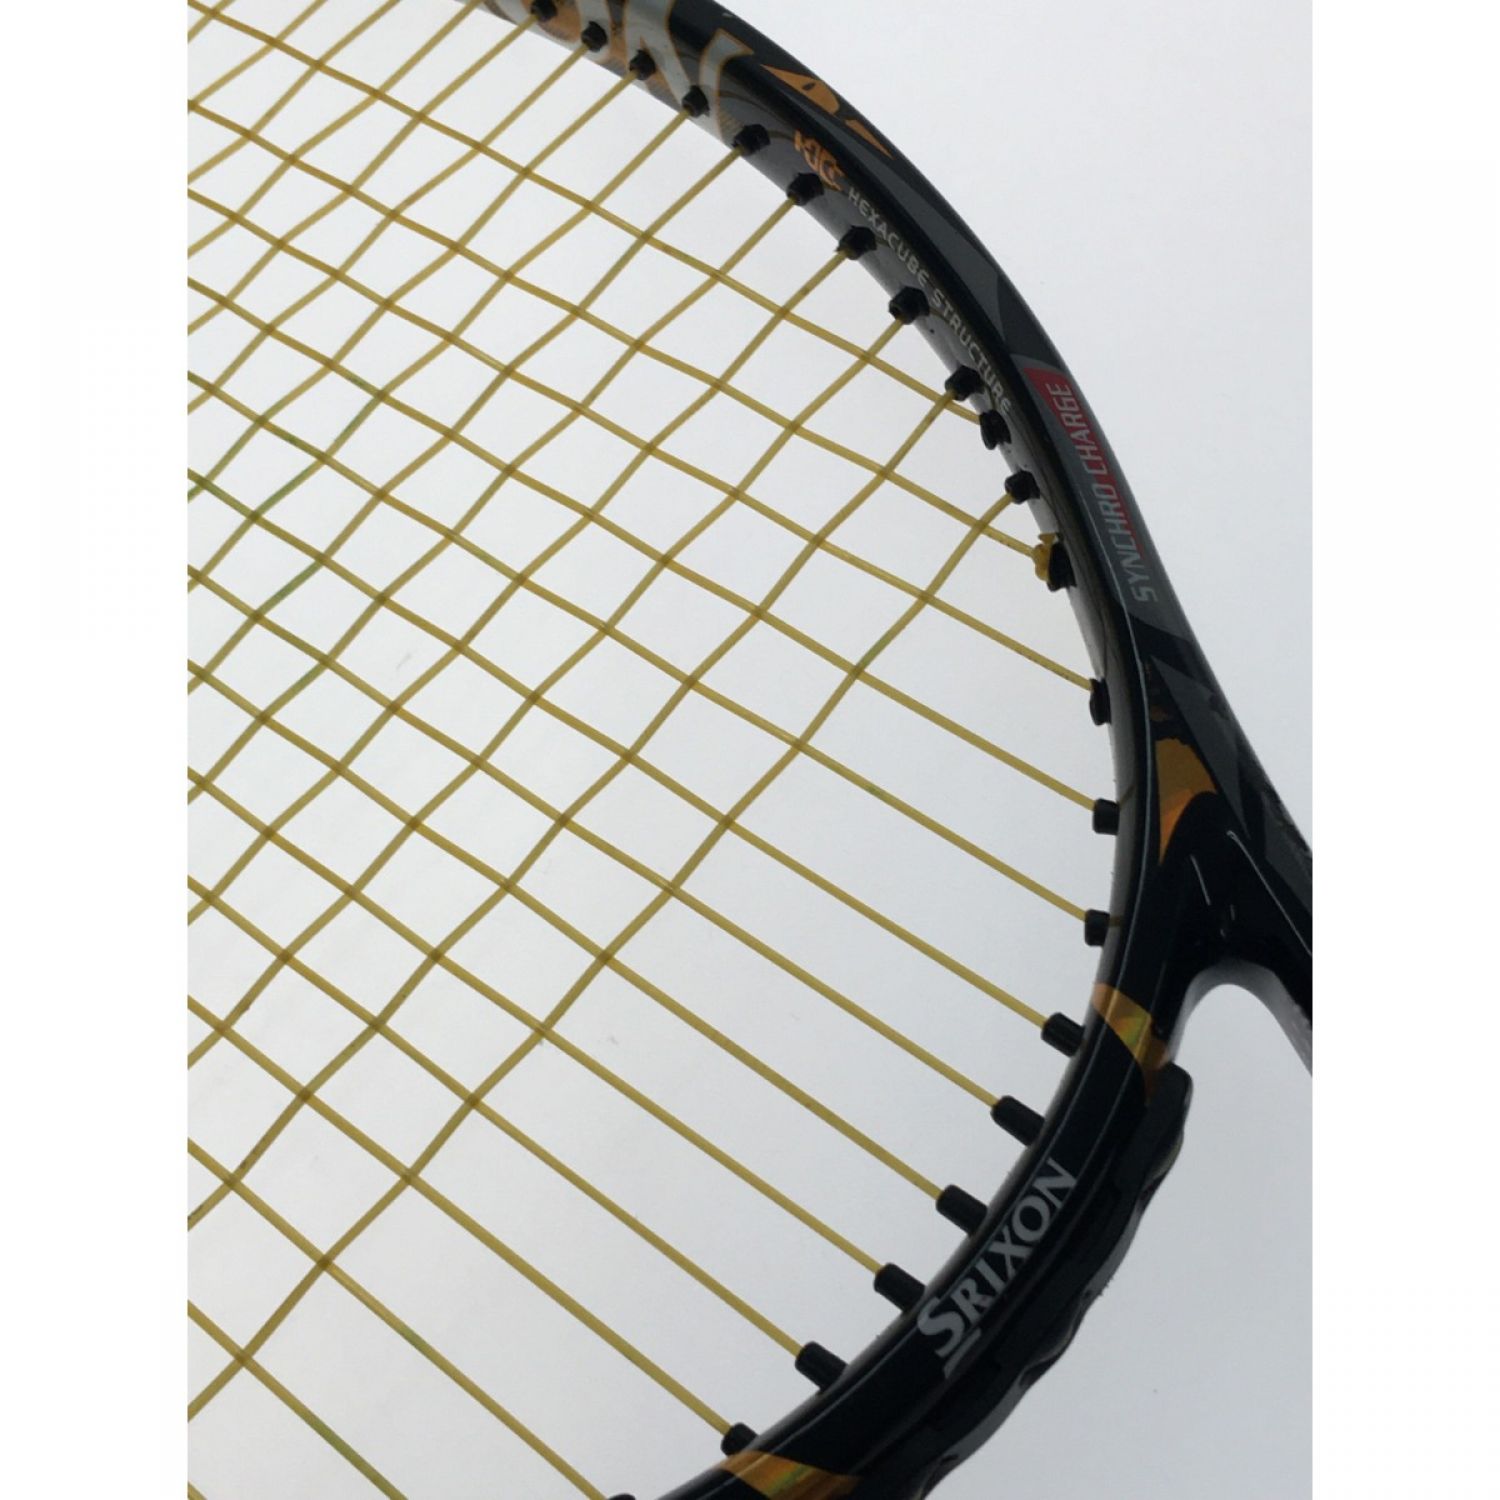 スリクソン　硬式　テニスラケット